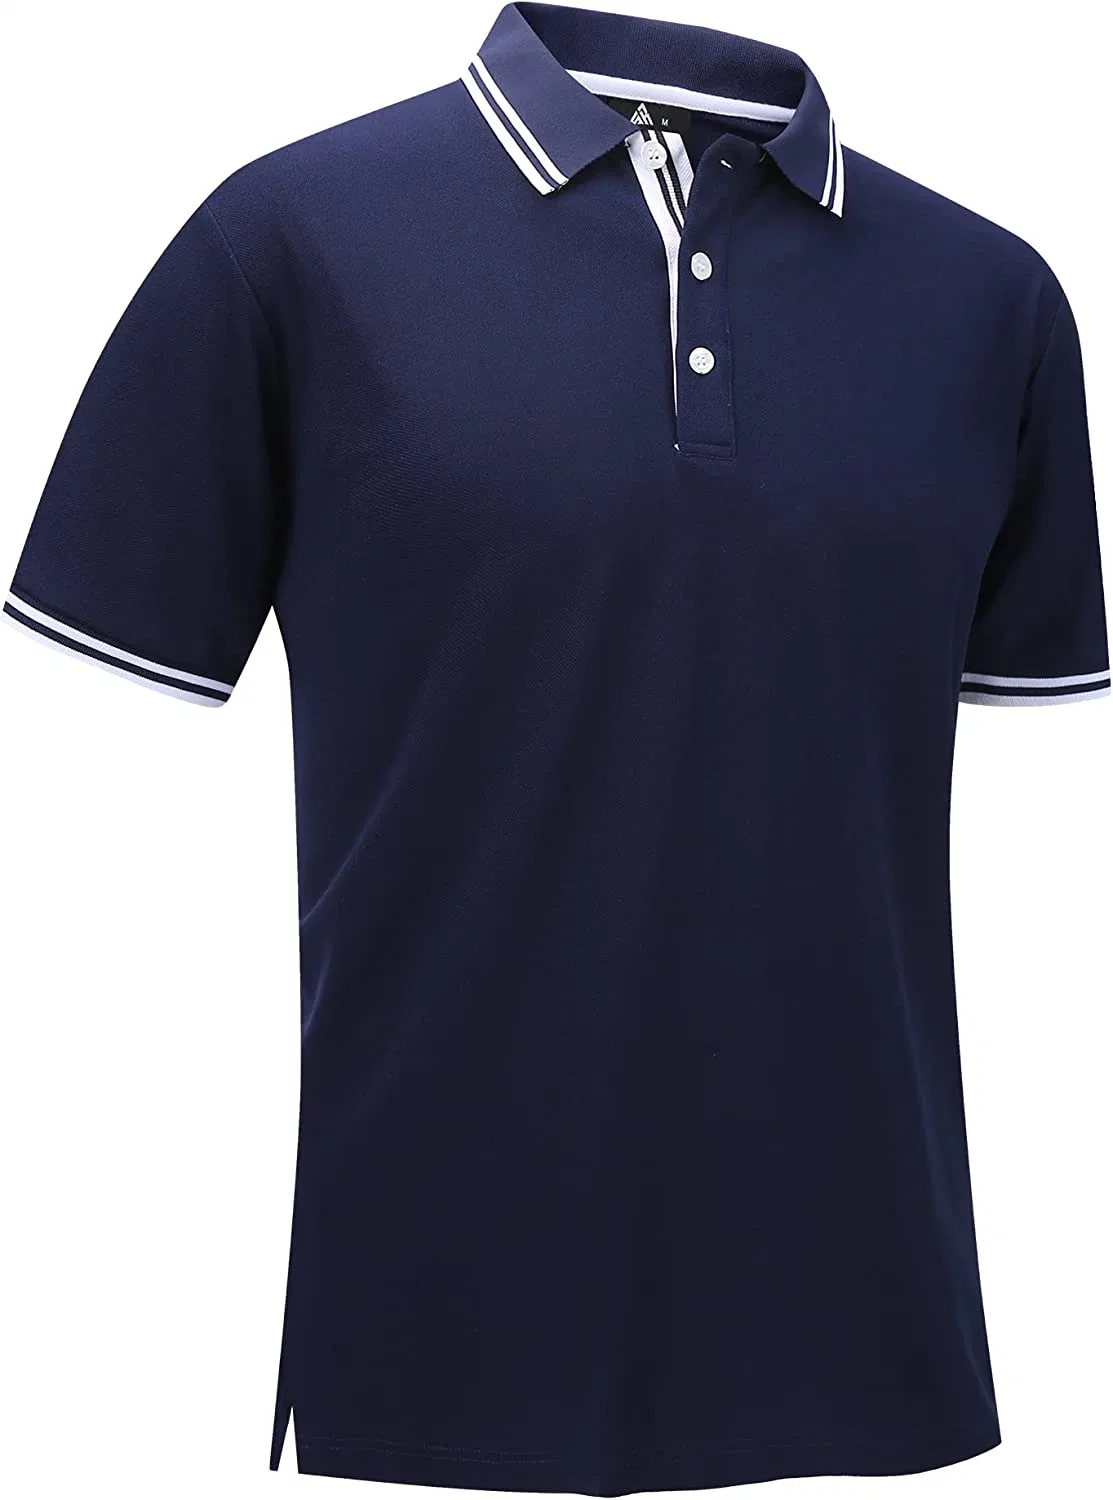 Поле для гольфа поло для мужчин короткие втулки сшита влажности летние Повседневные рубашки с галстуком теннис футболки на заказ